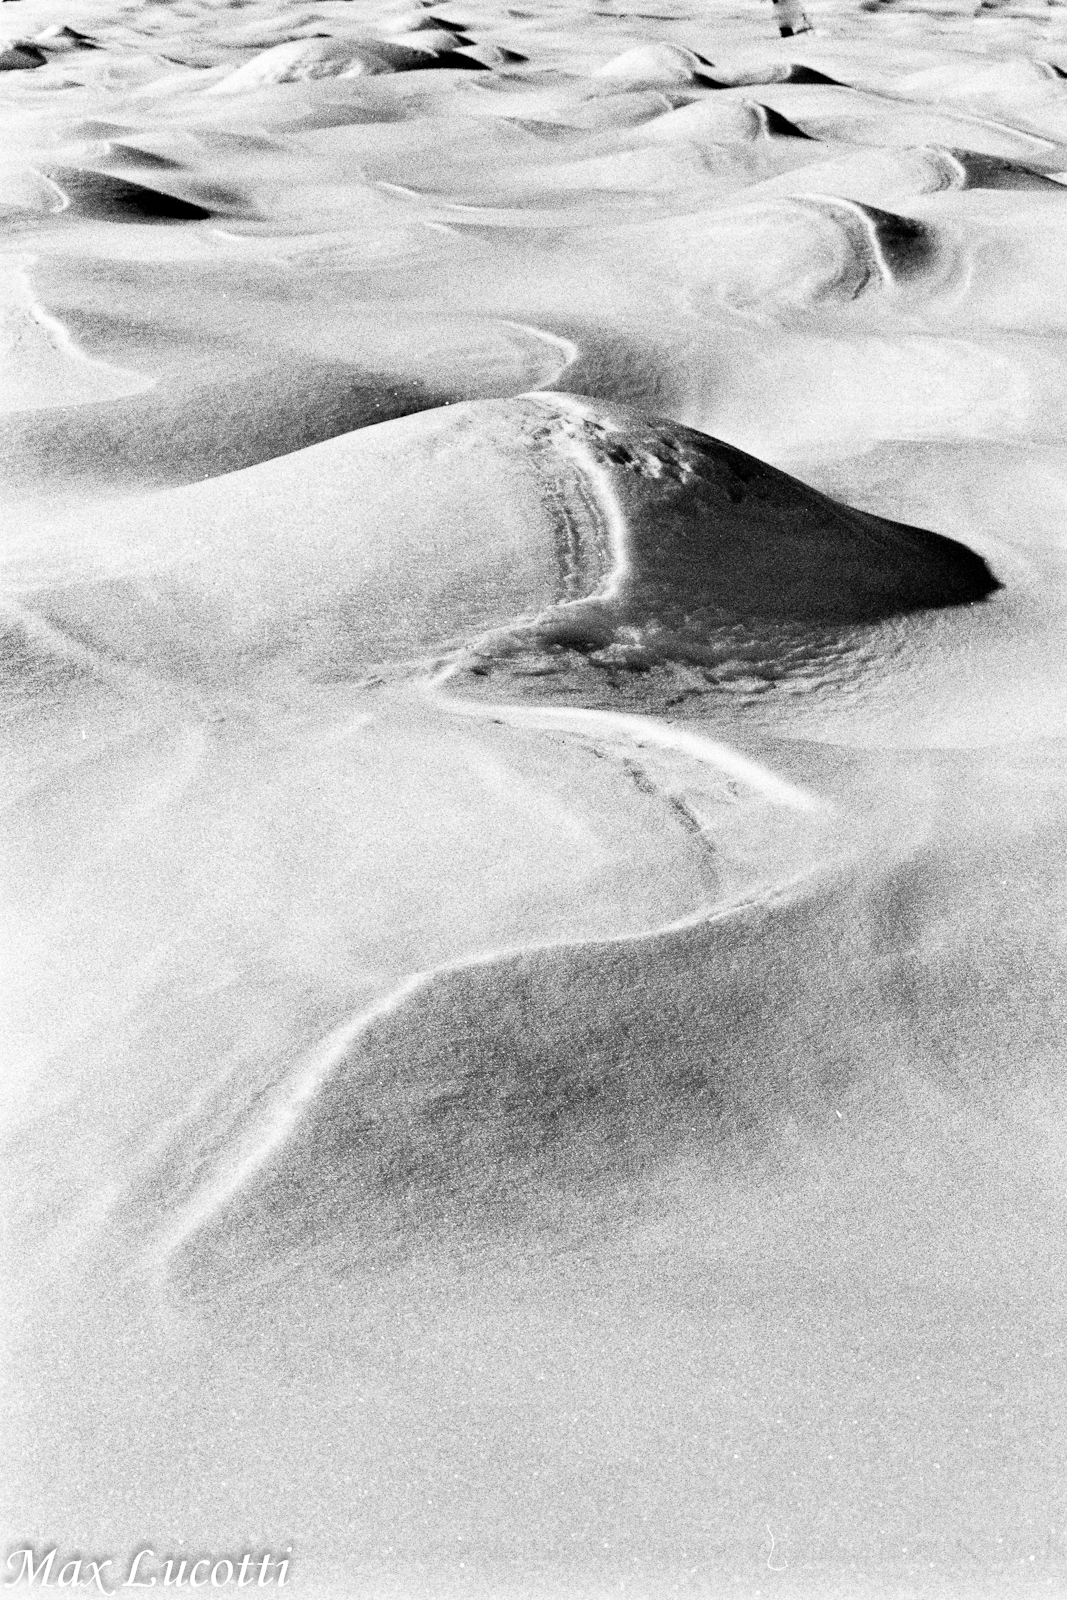 Dunes of Snow...